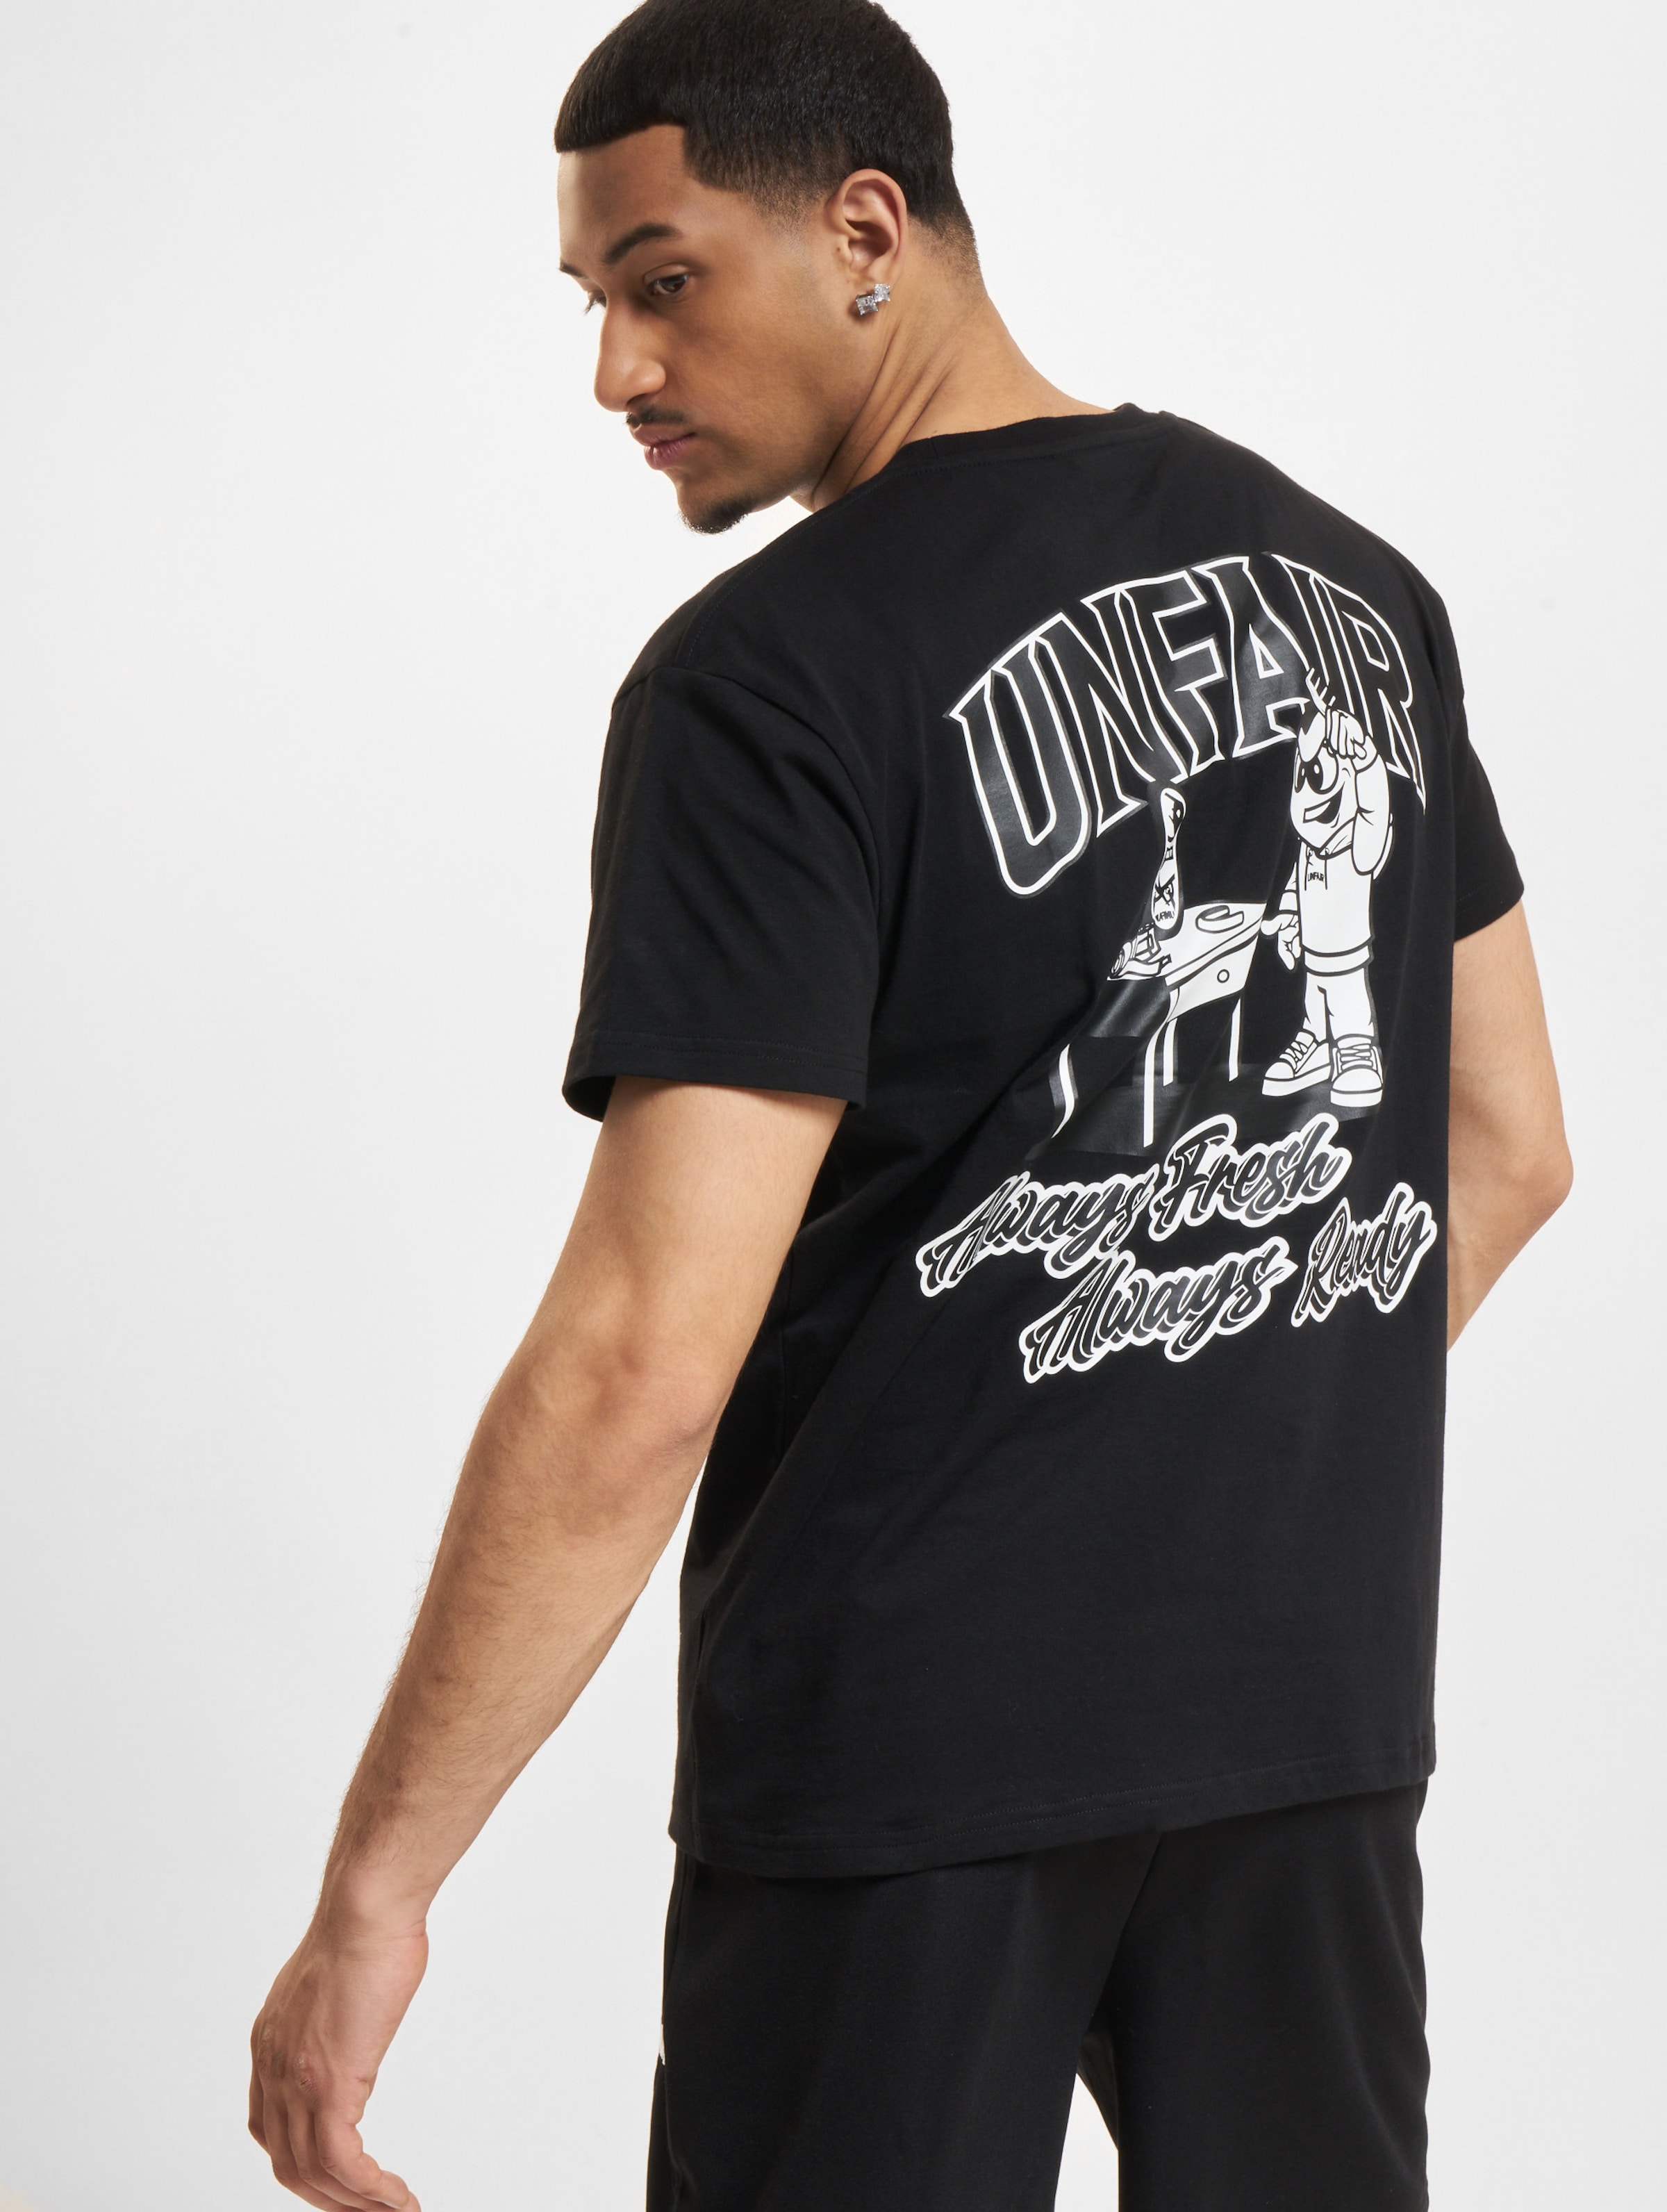 UNFAIR ATHLETICS Always Ready T-Shirt Männer,Unisex op kleur zwart, Maat S